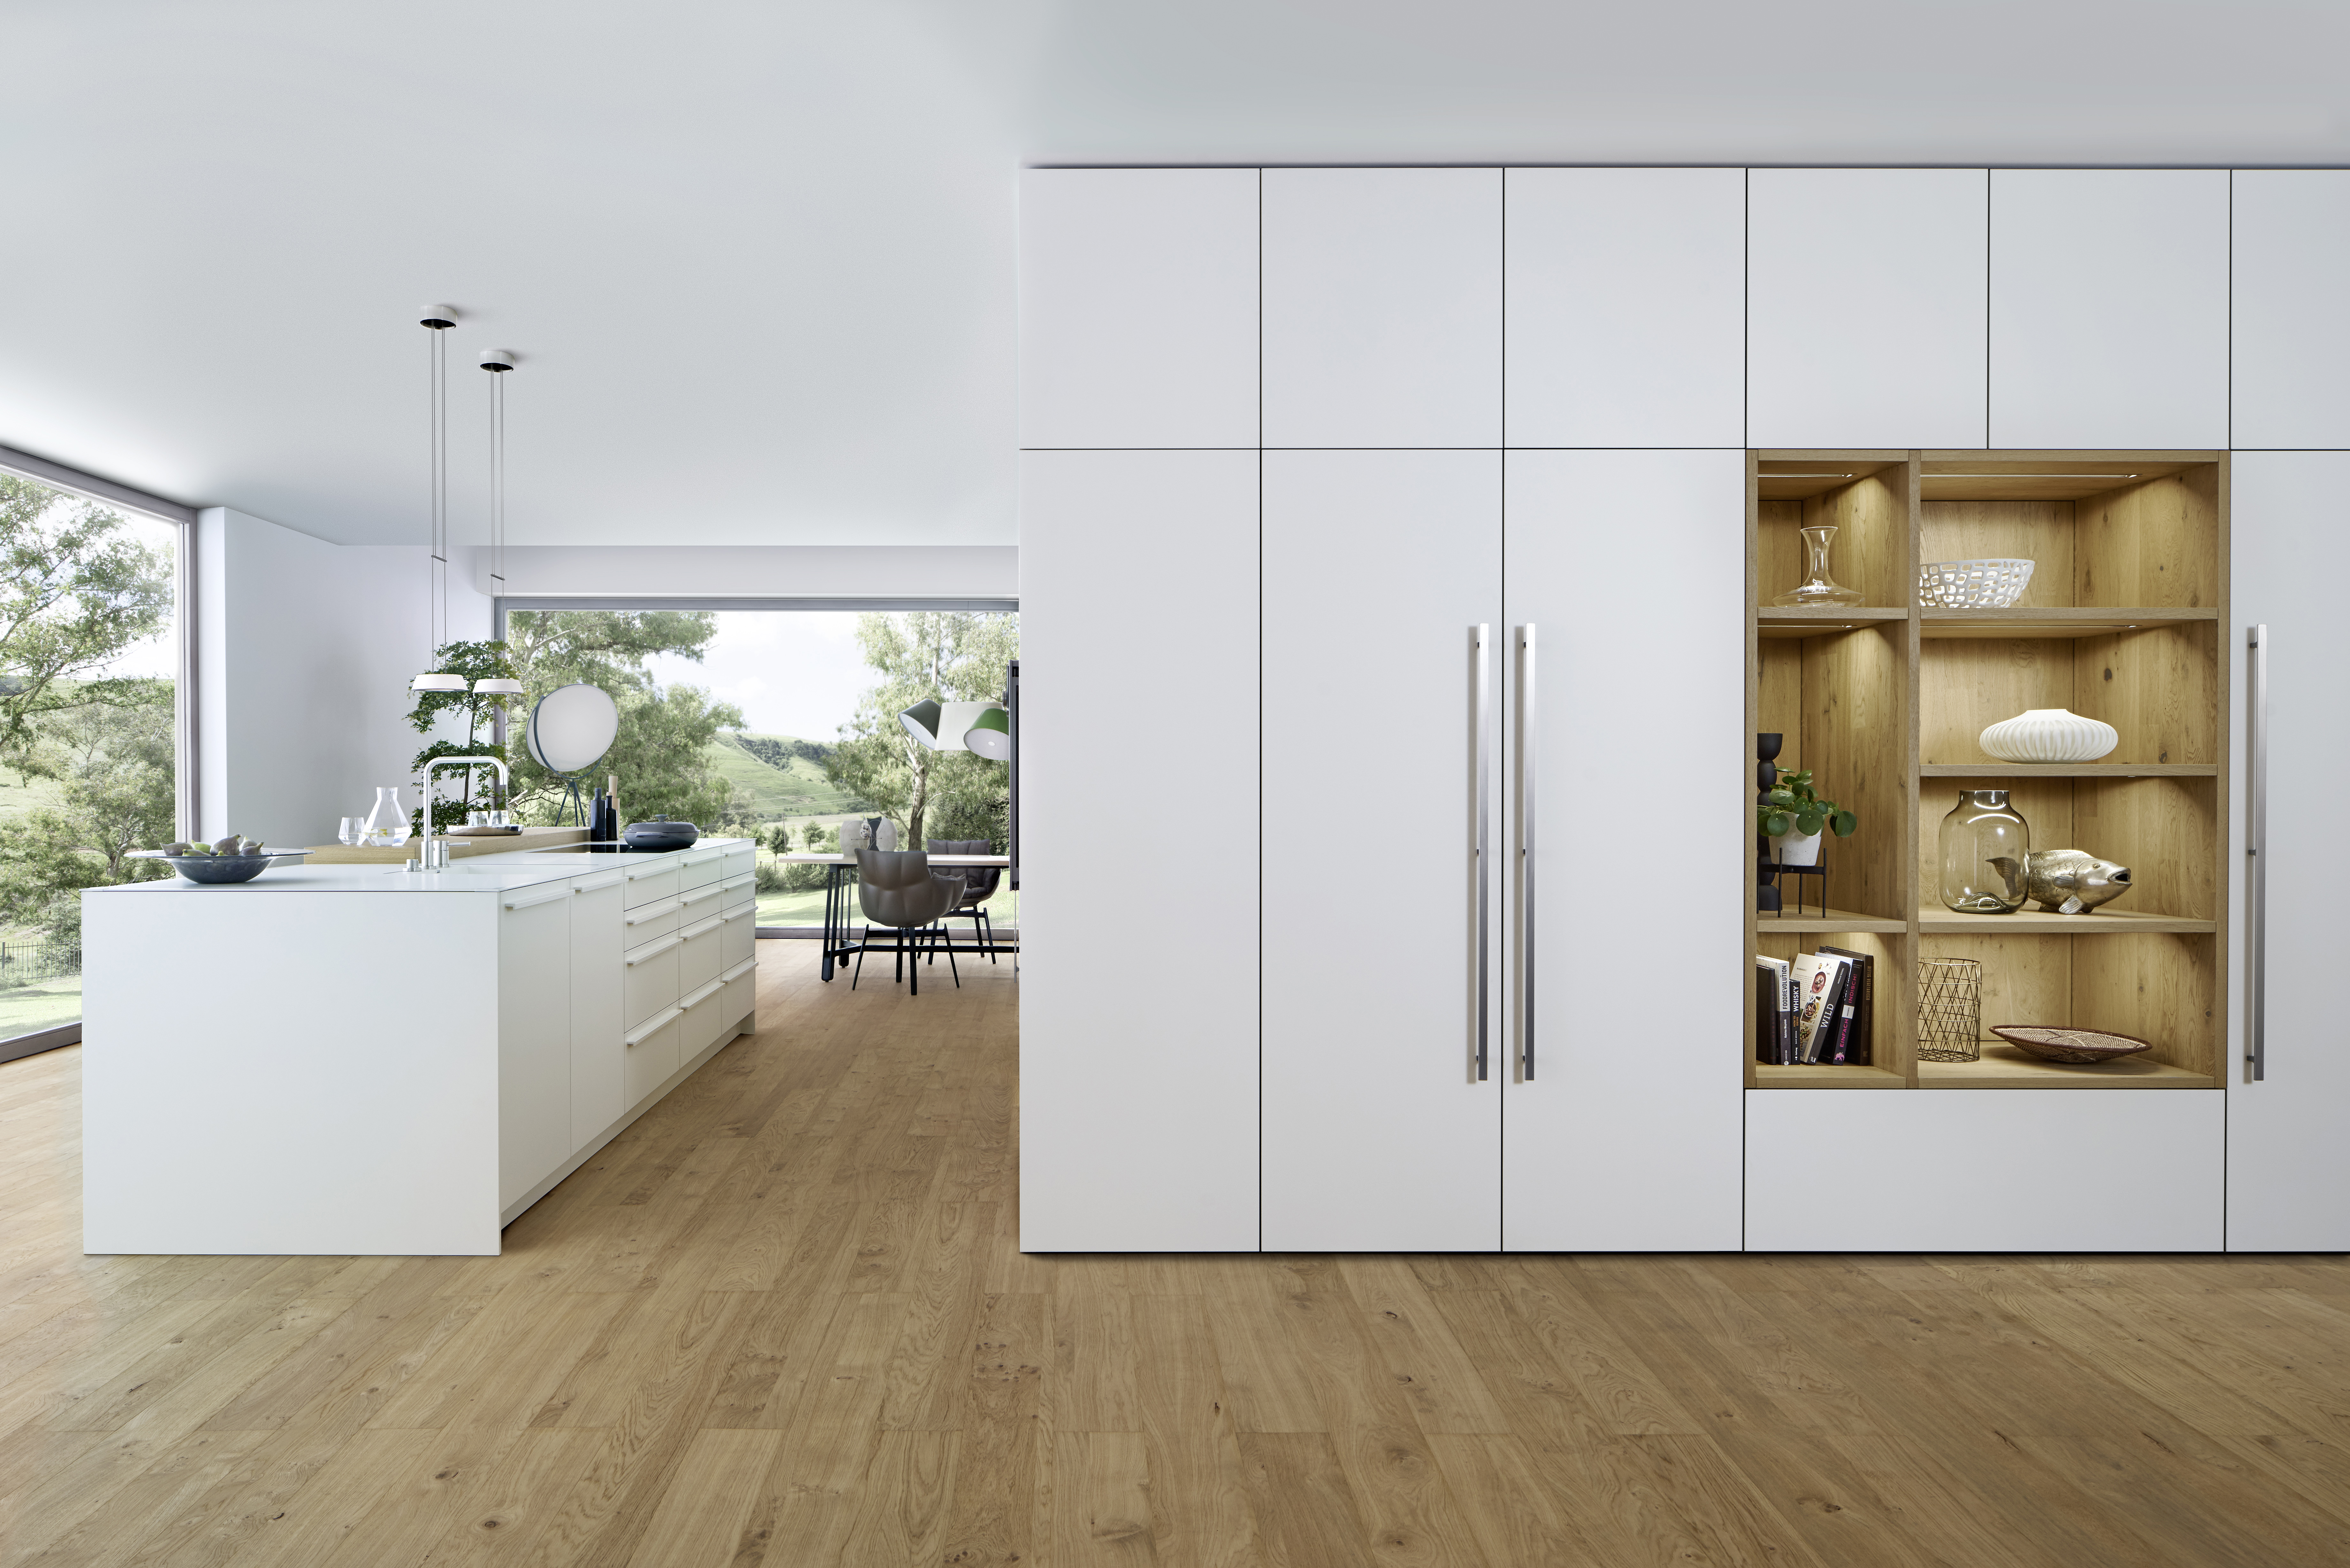 Jilg Küche & Wohnen - Wohnraumgestaltung und Raum-in-Raum Konzepte von Leicht